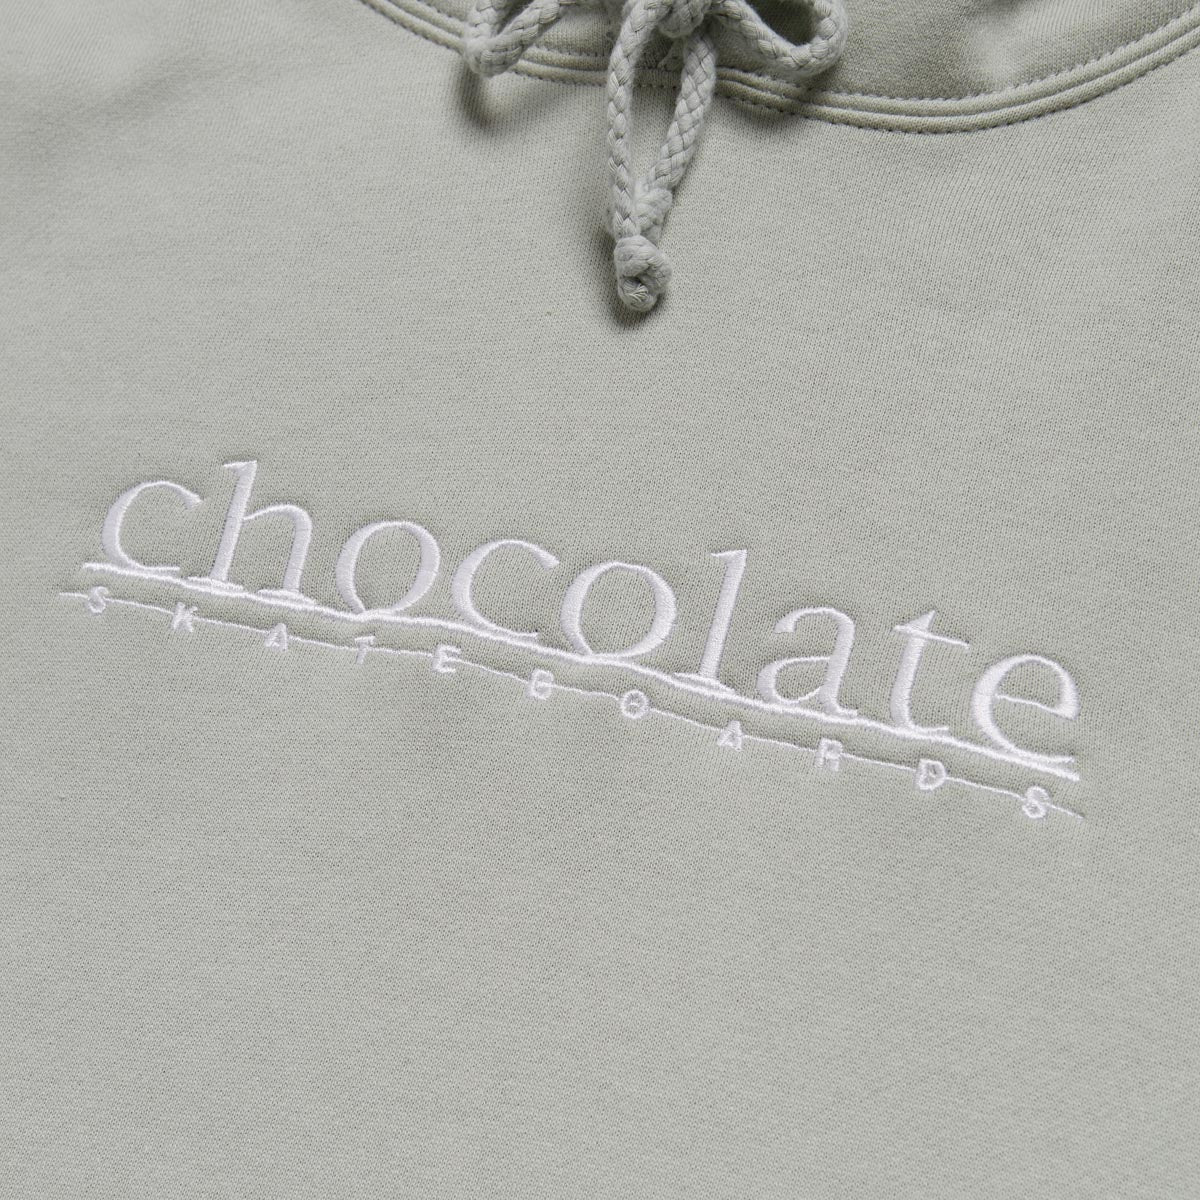 Chocolate Company Hoodie - Dusty Sage image 2